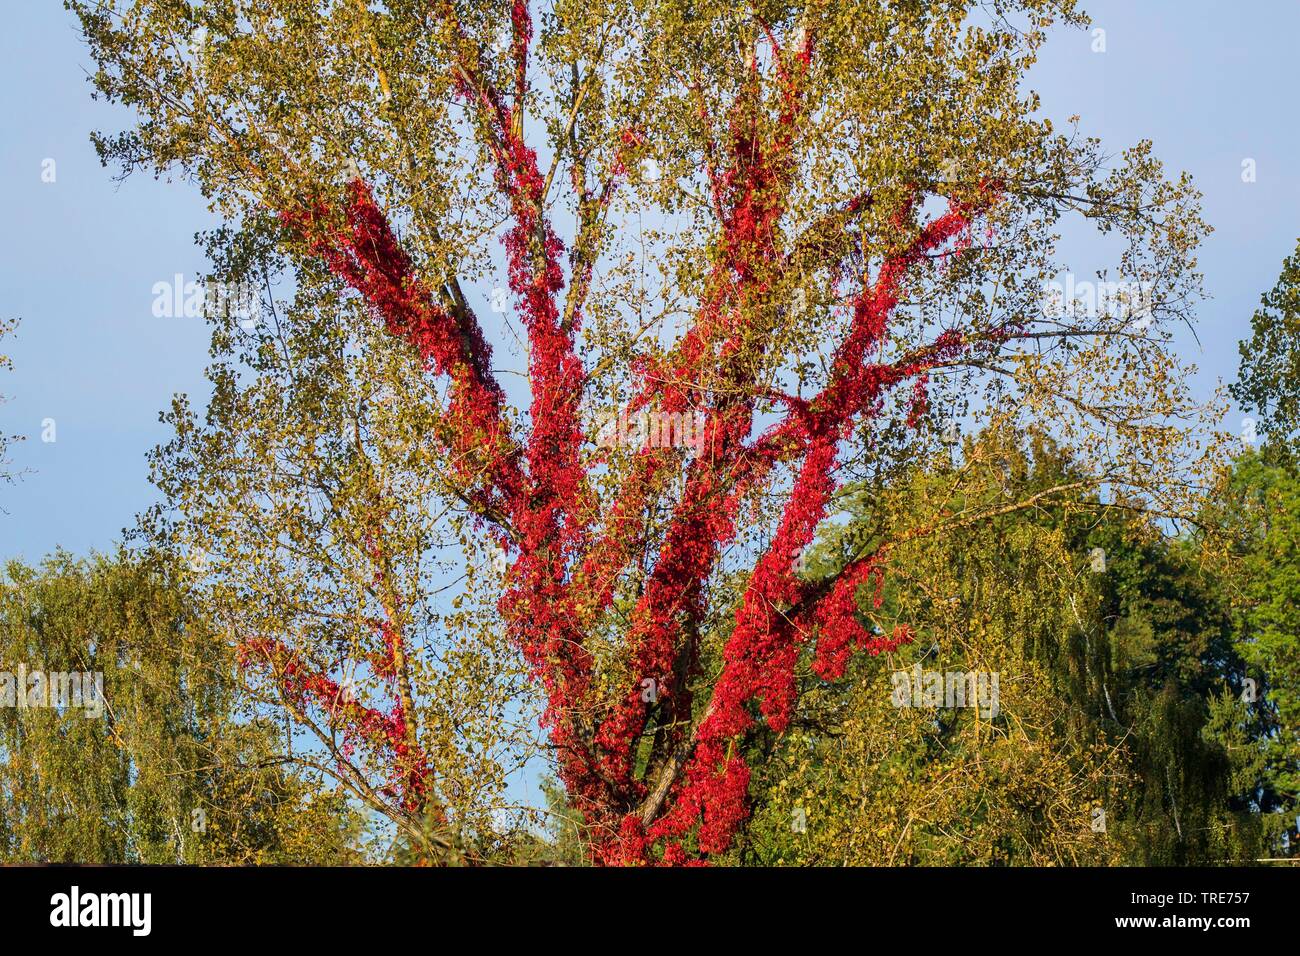 Virginia creeper, Woodbine berry (Parthenocissus quinquefolia), escalade sur un peuplier, Allemagne, Bavière, Niederbayern, Basse-Bavière Banque D'Images